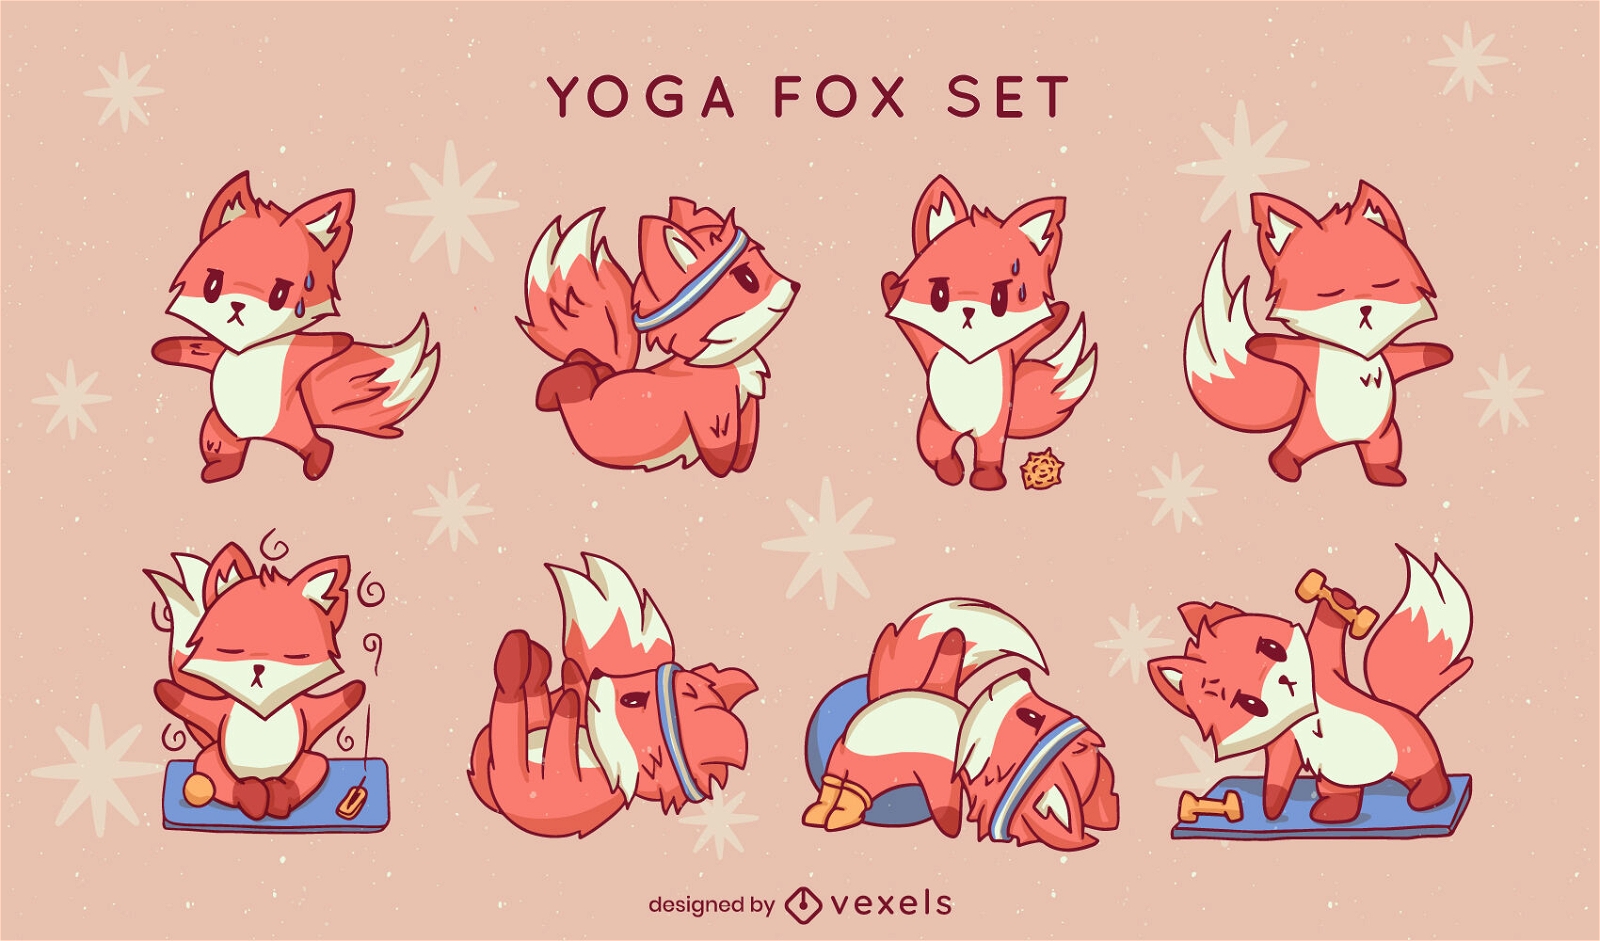 Cute fox animals yoga meditation set